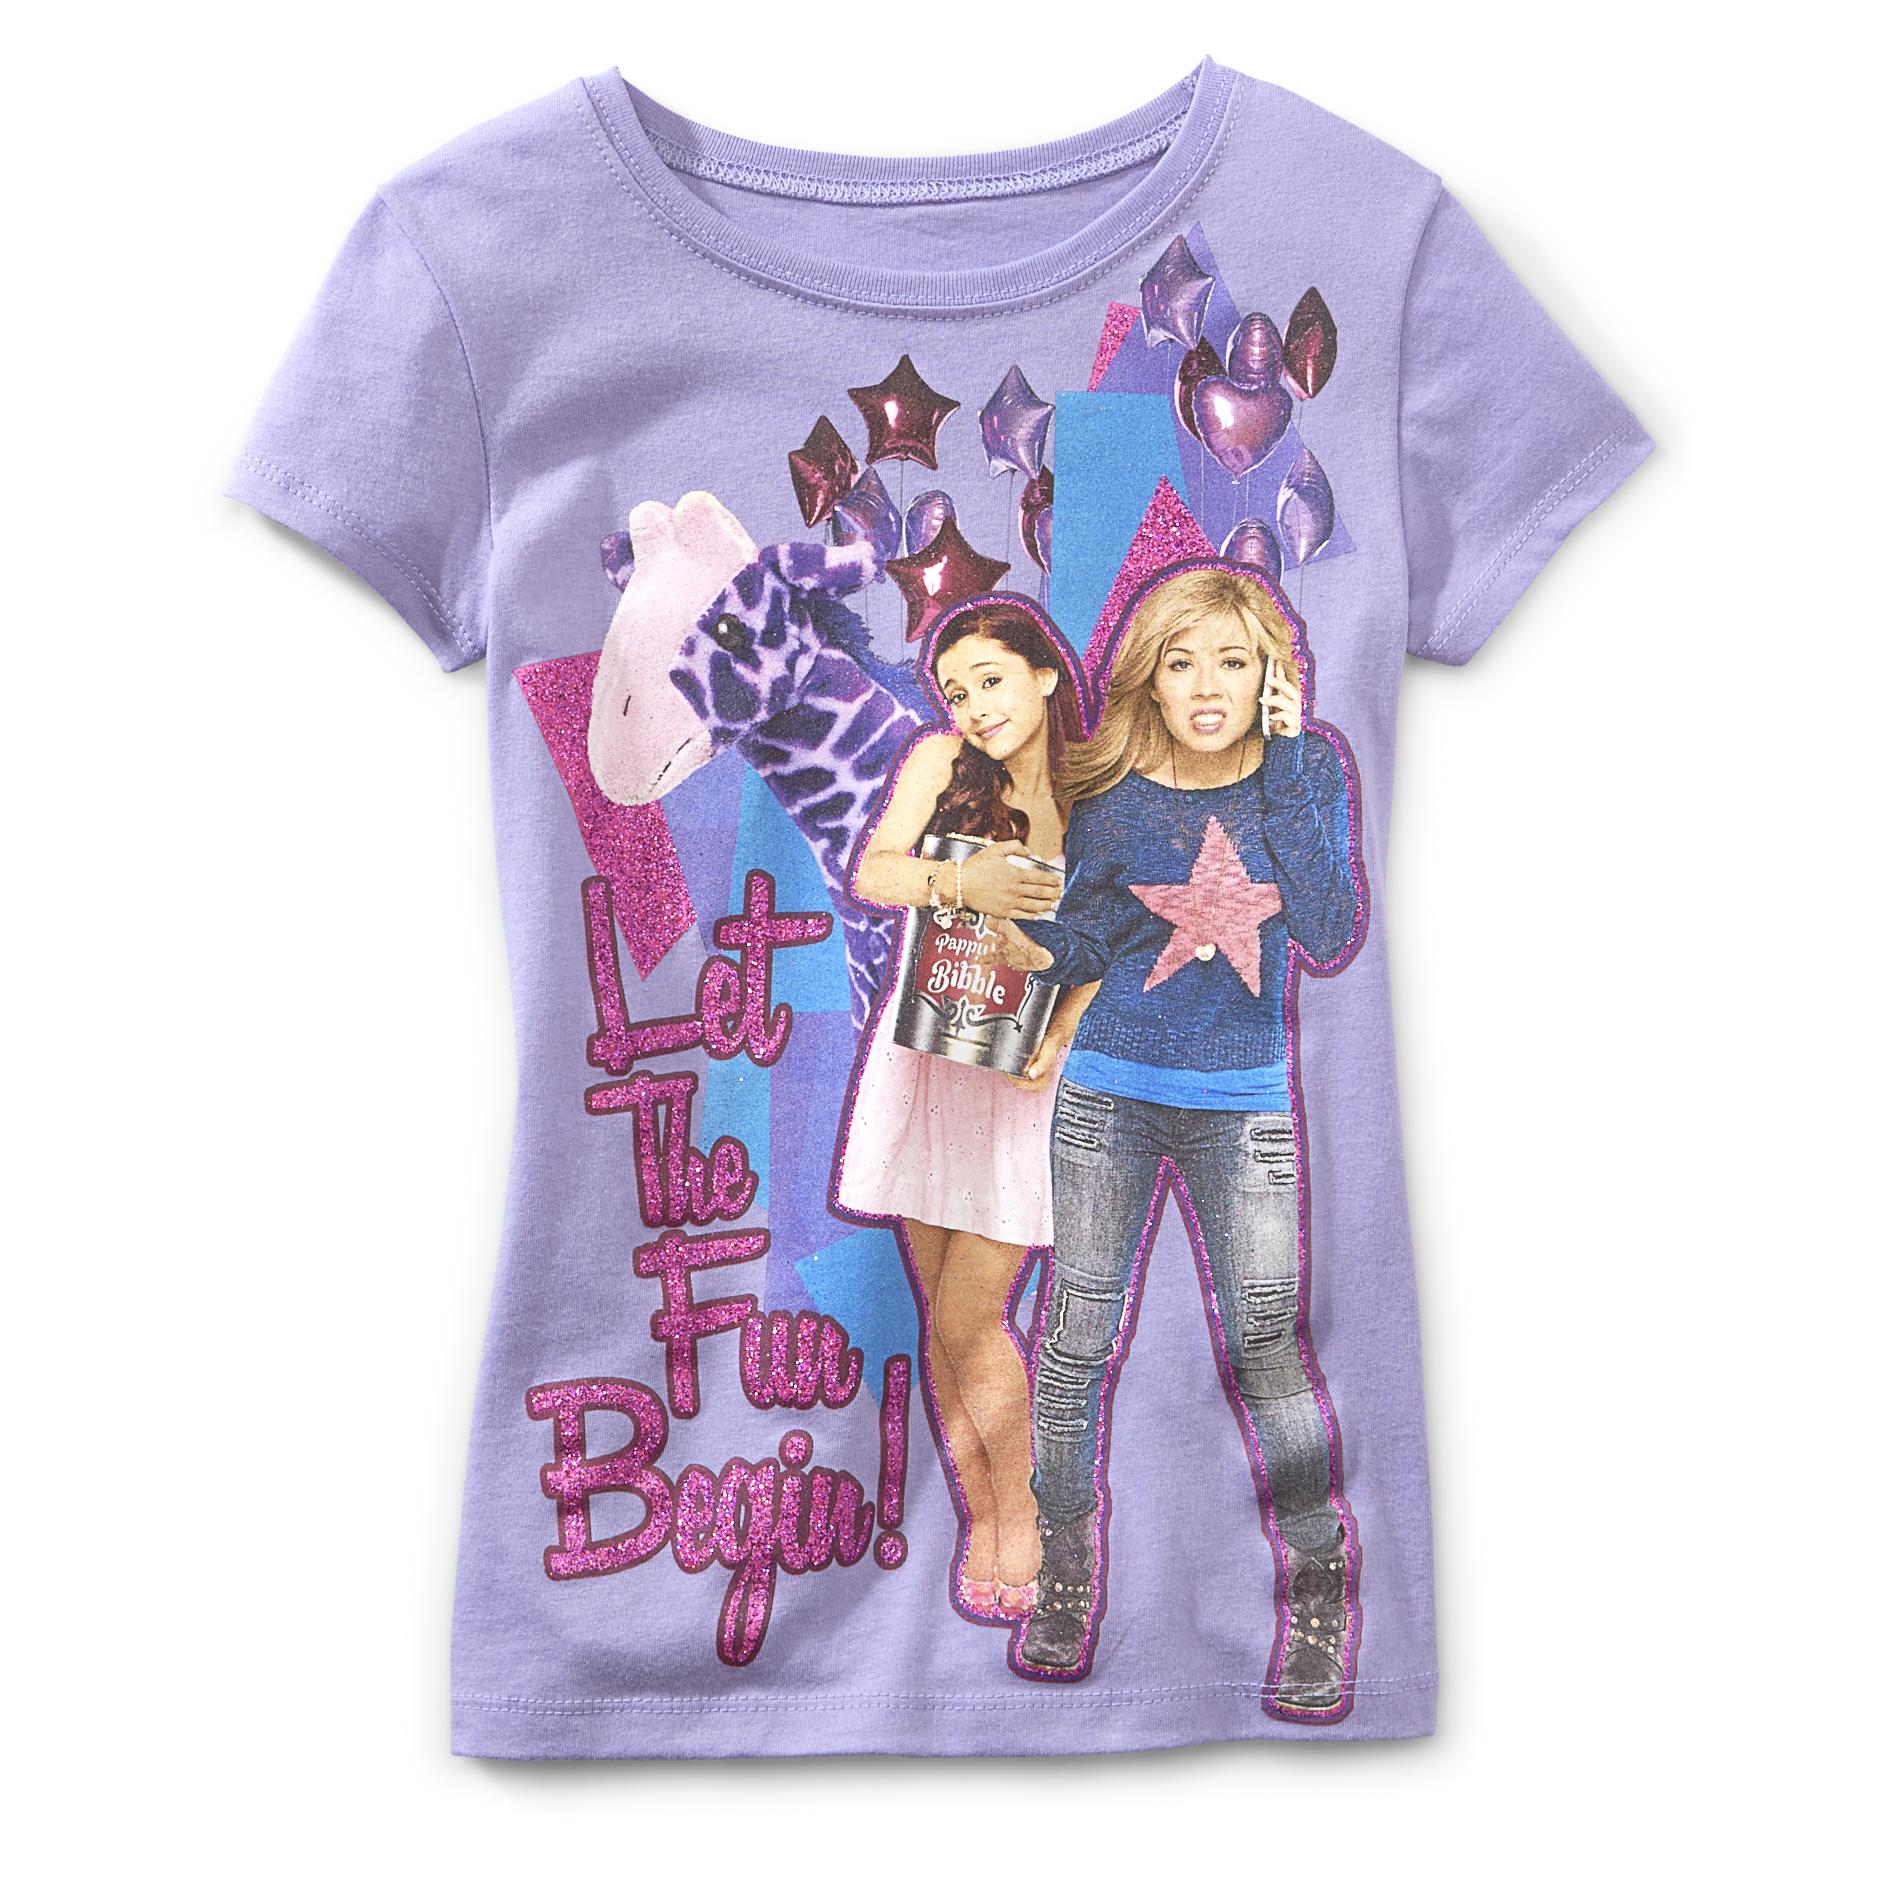 Nickelodeon Girl's Graphic T-Shirt - Sam & Cat